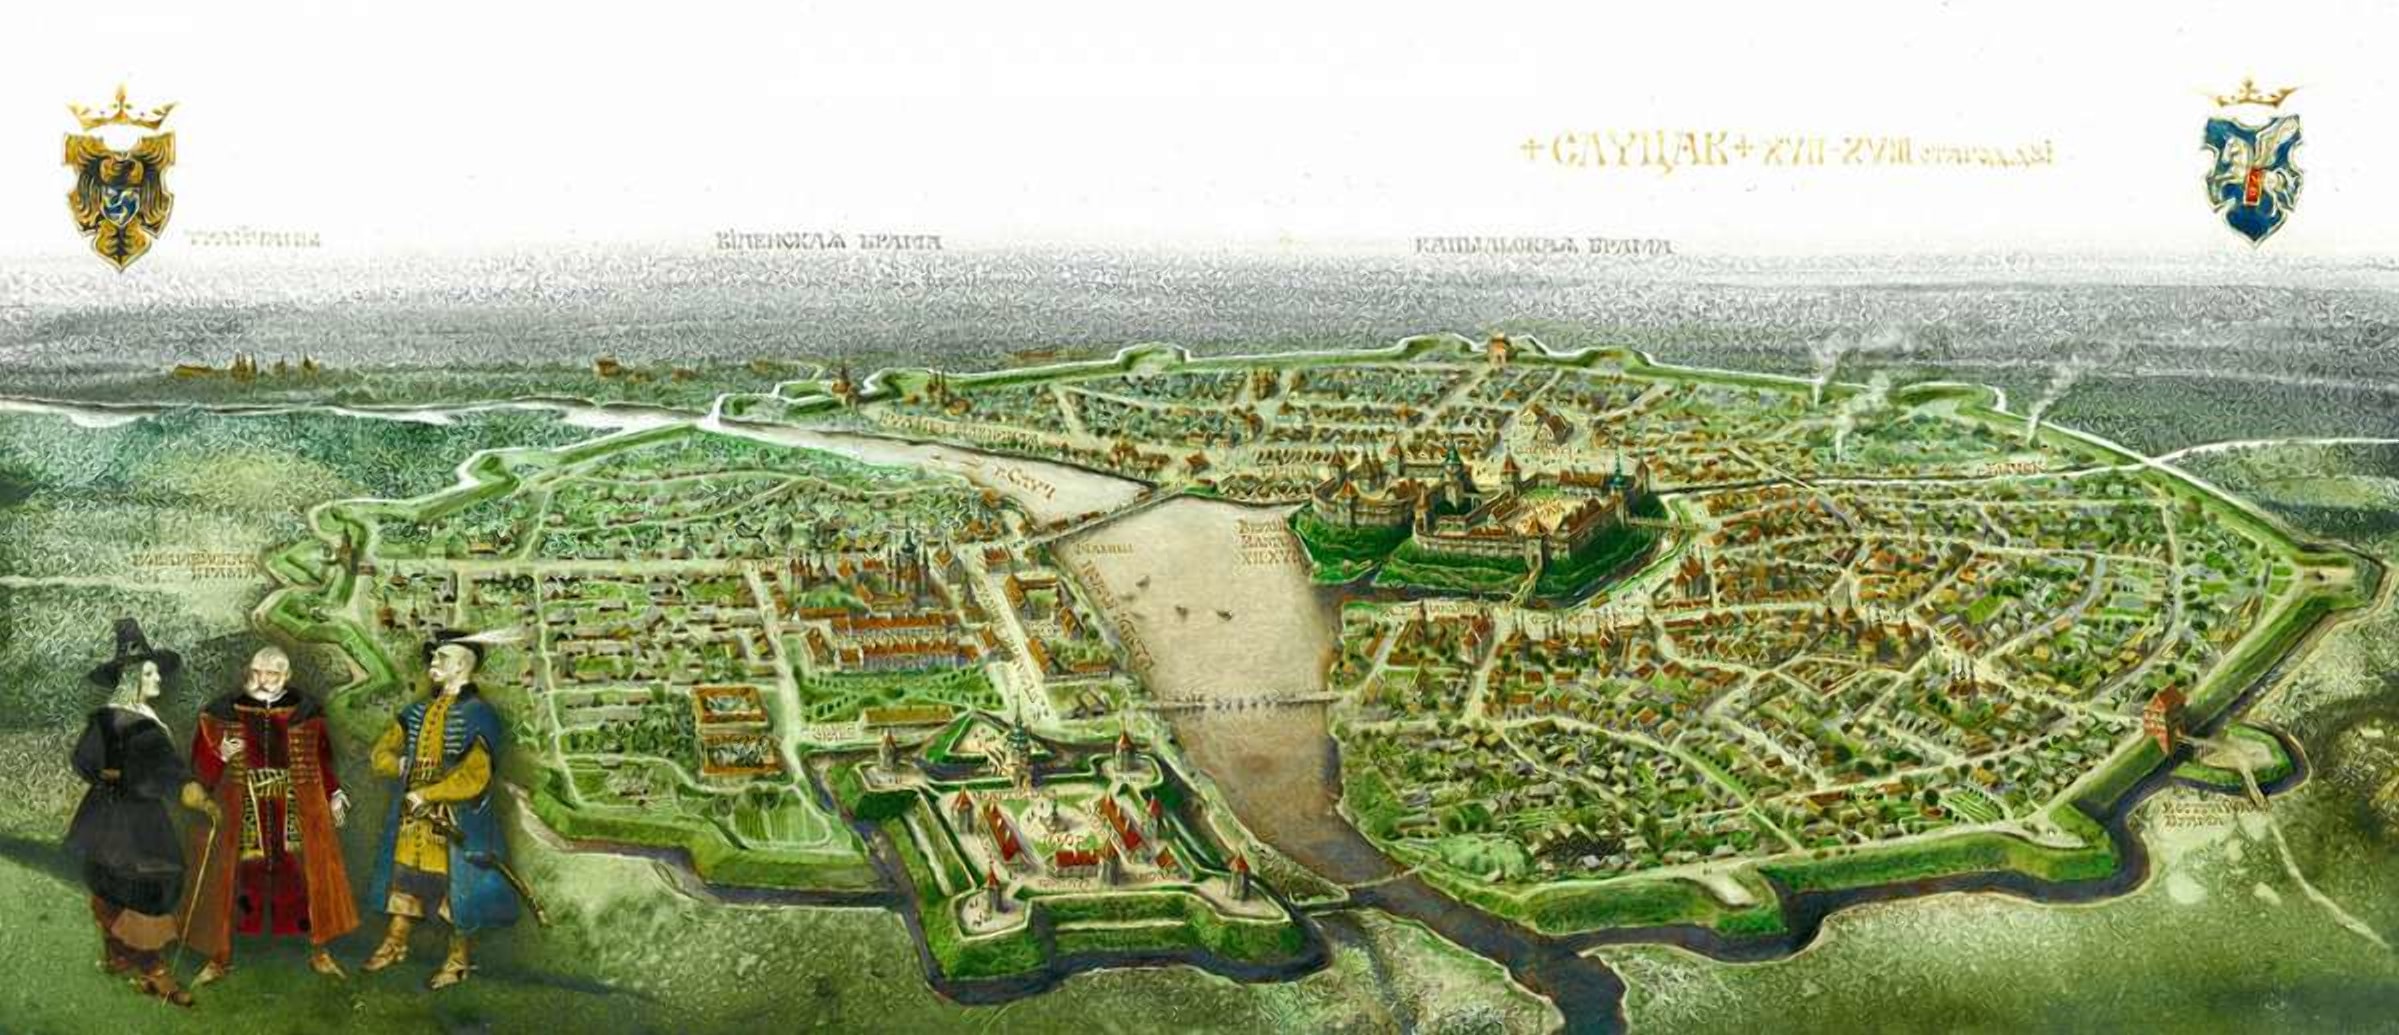 Слуцк в средние века был крупным городом